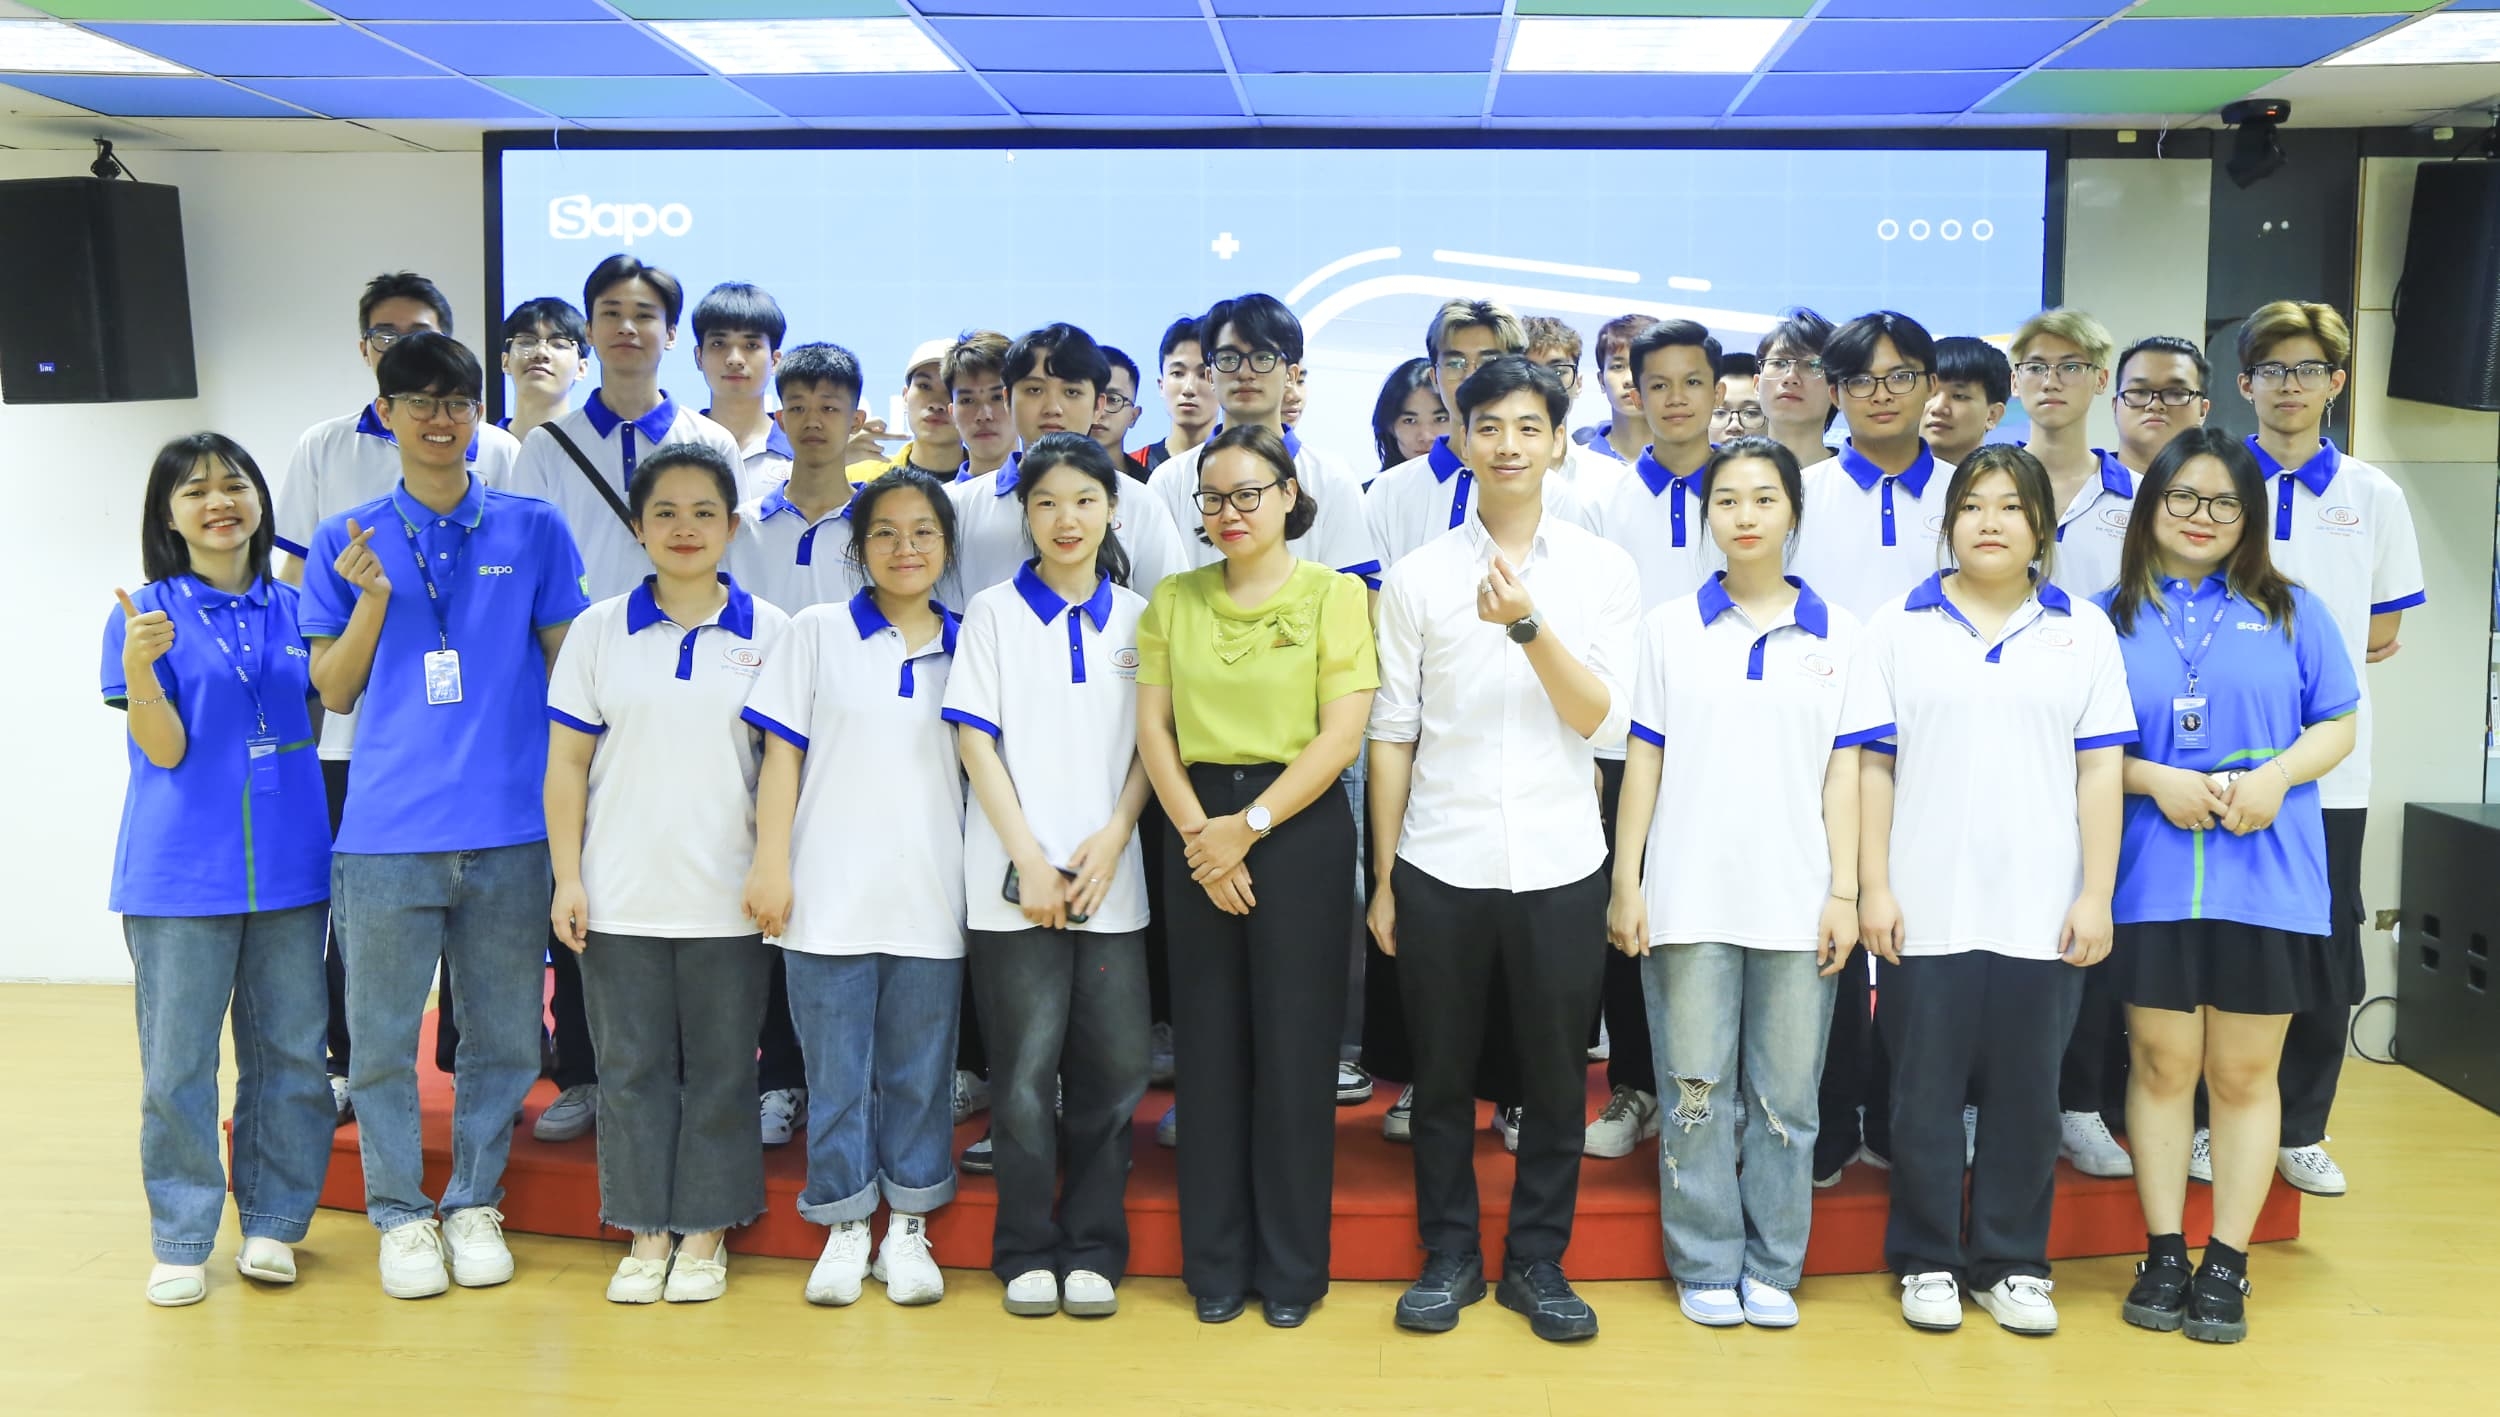 [Sapo Tour] Trải nghiệm tham quan thực tế của sinh viên Đại học Nguyễn Trãi tại Sapo Hà Nội